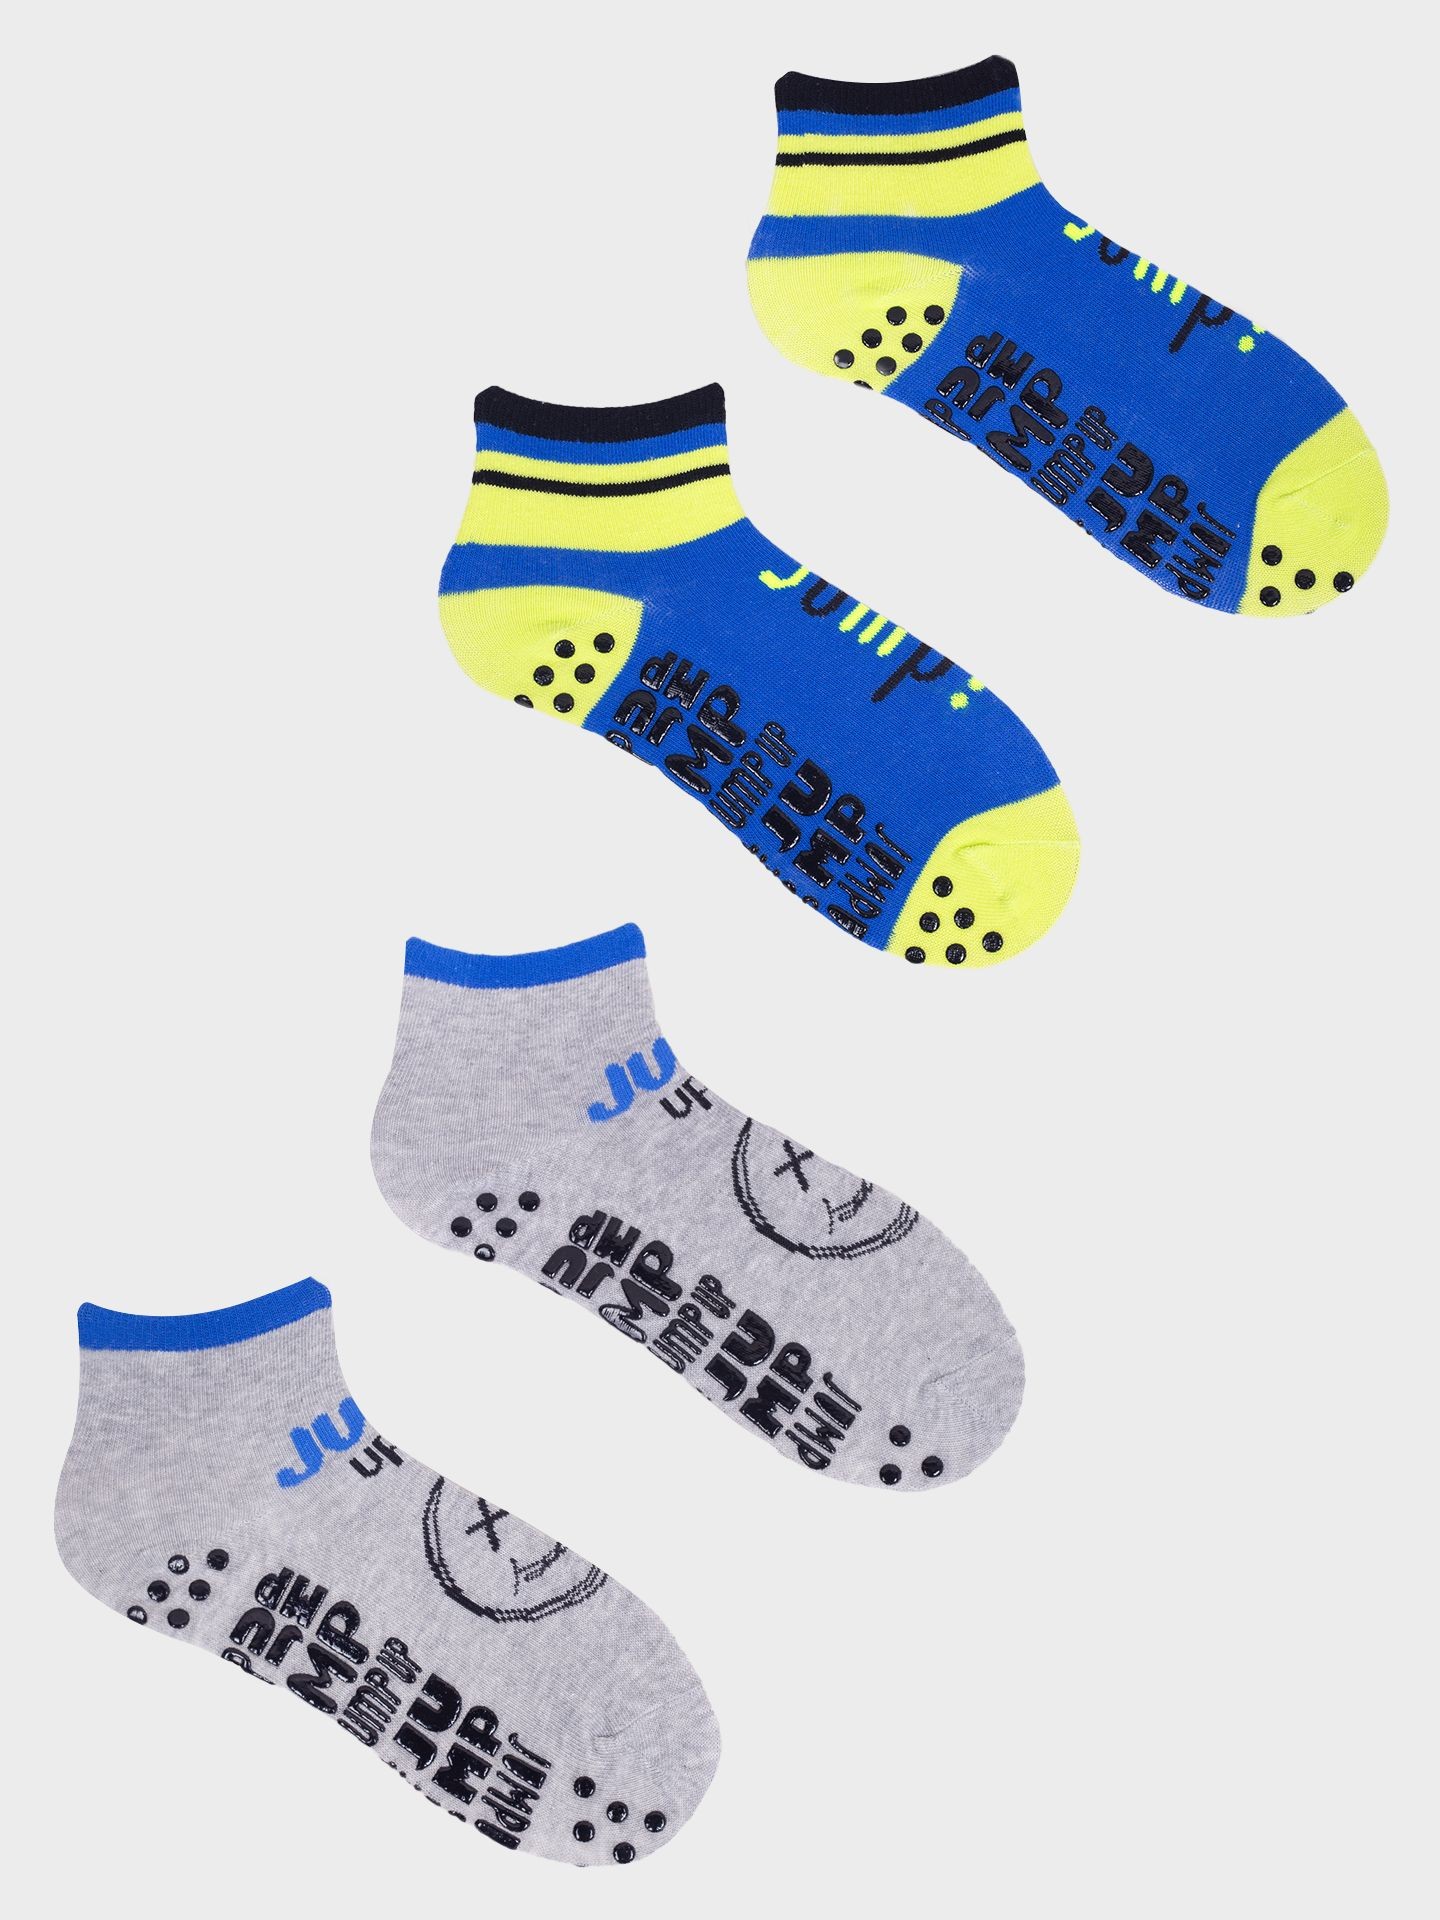 Yoclub Kids's Trampoline Socks 2-Pack SKS-0021C-AA0A-001